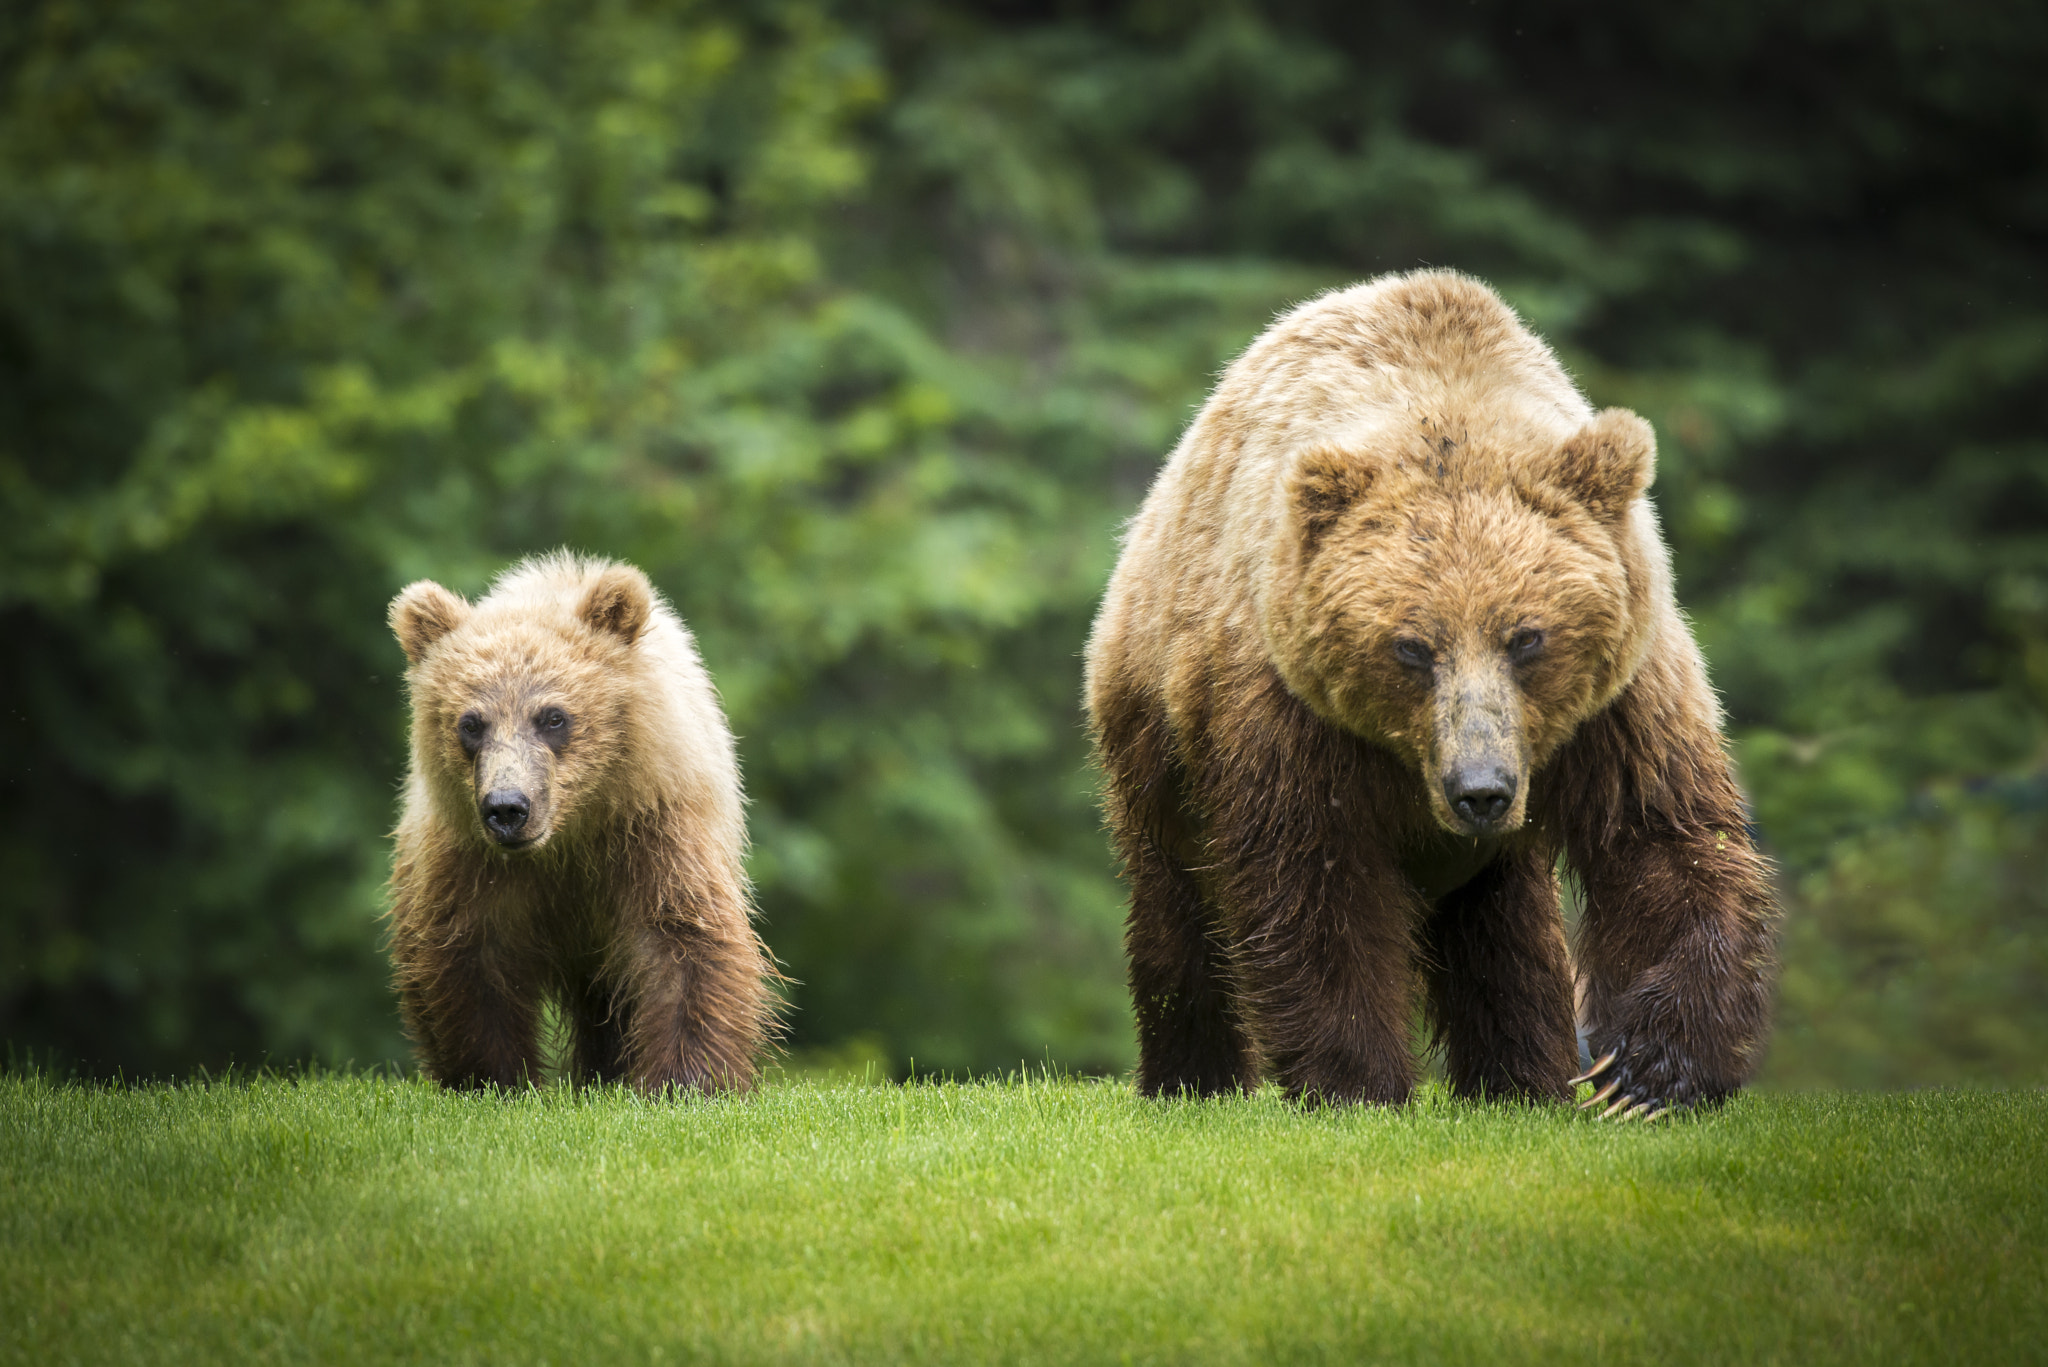 Momma bear and baby bear